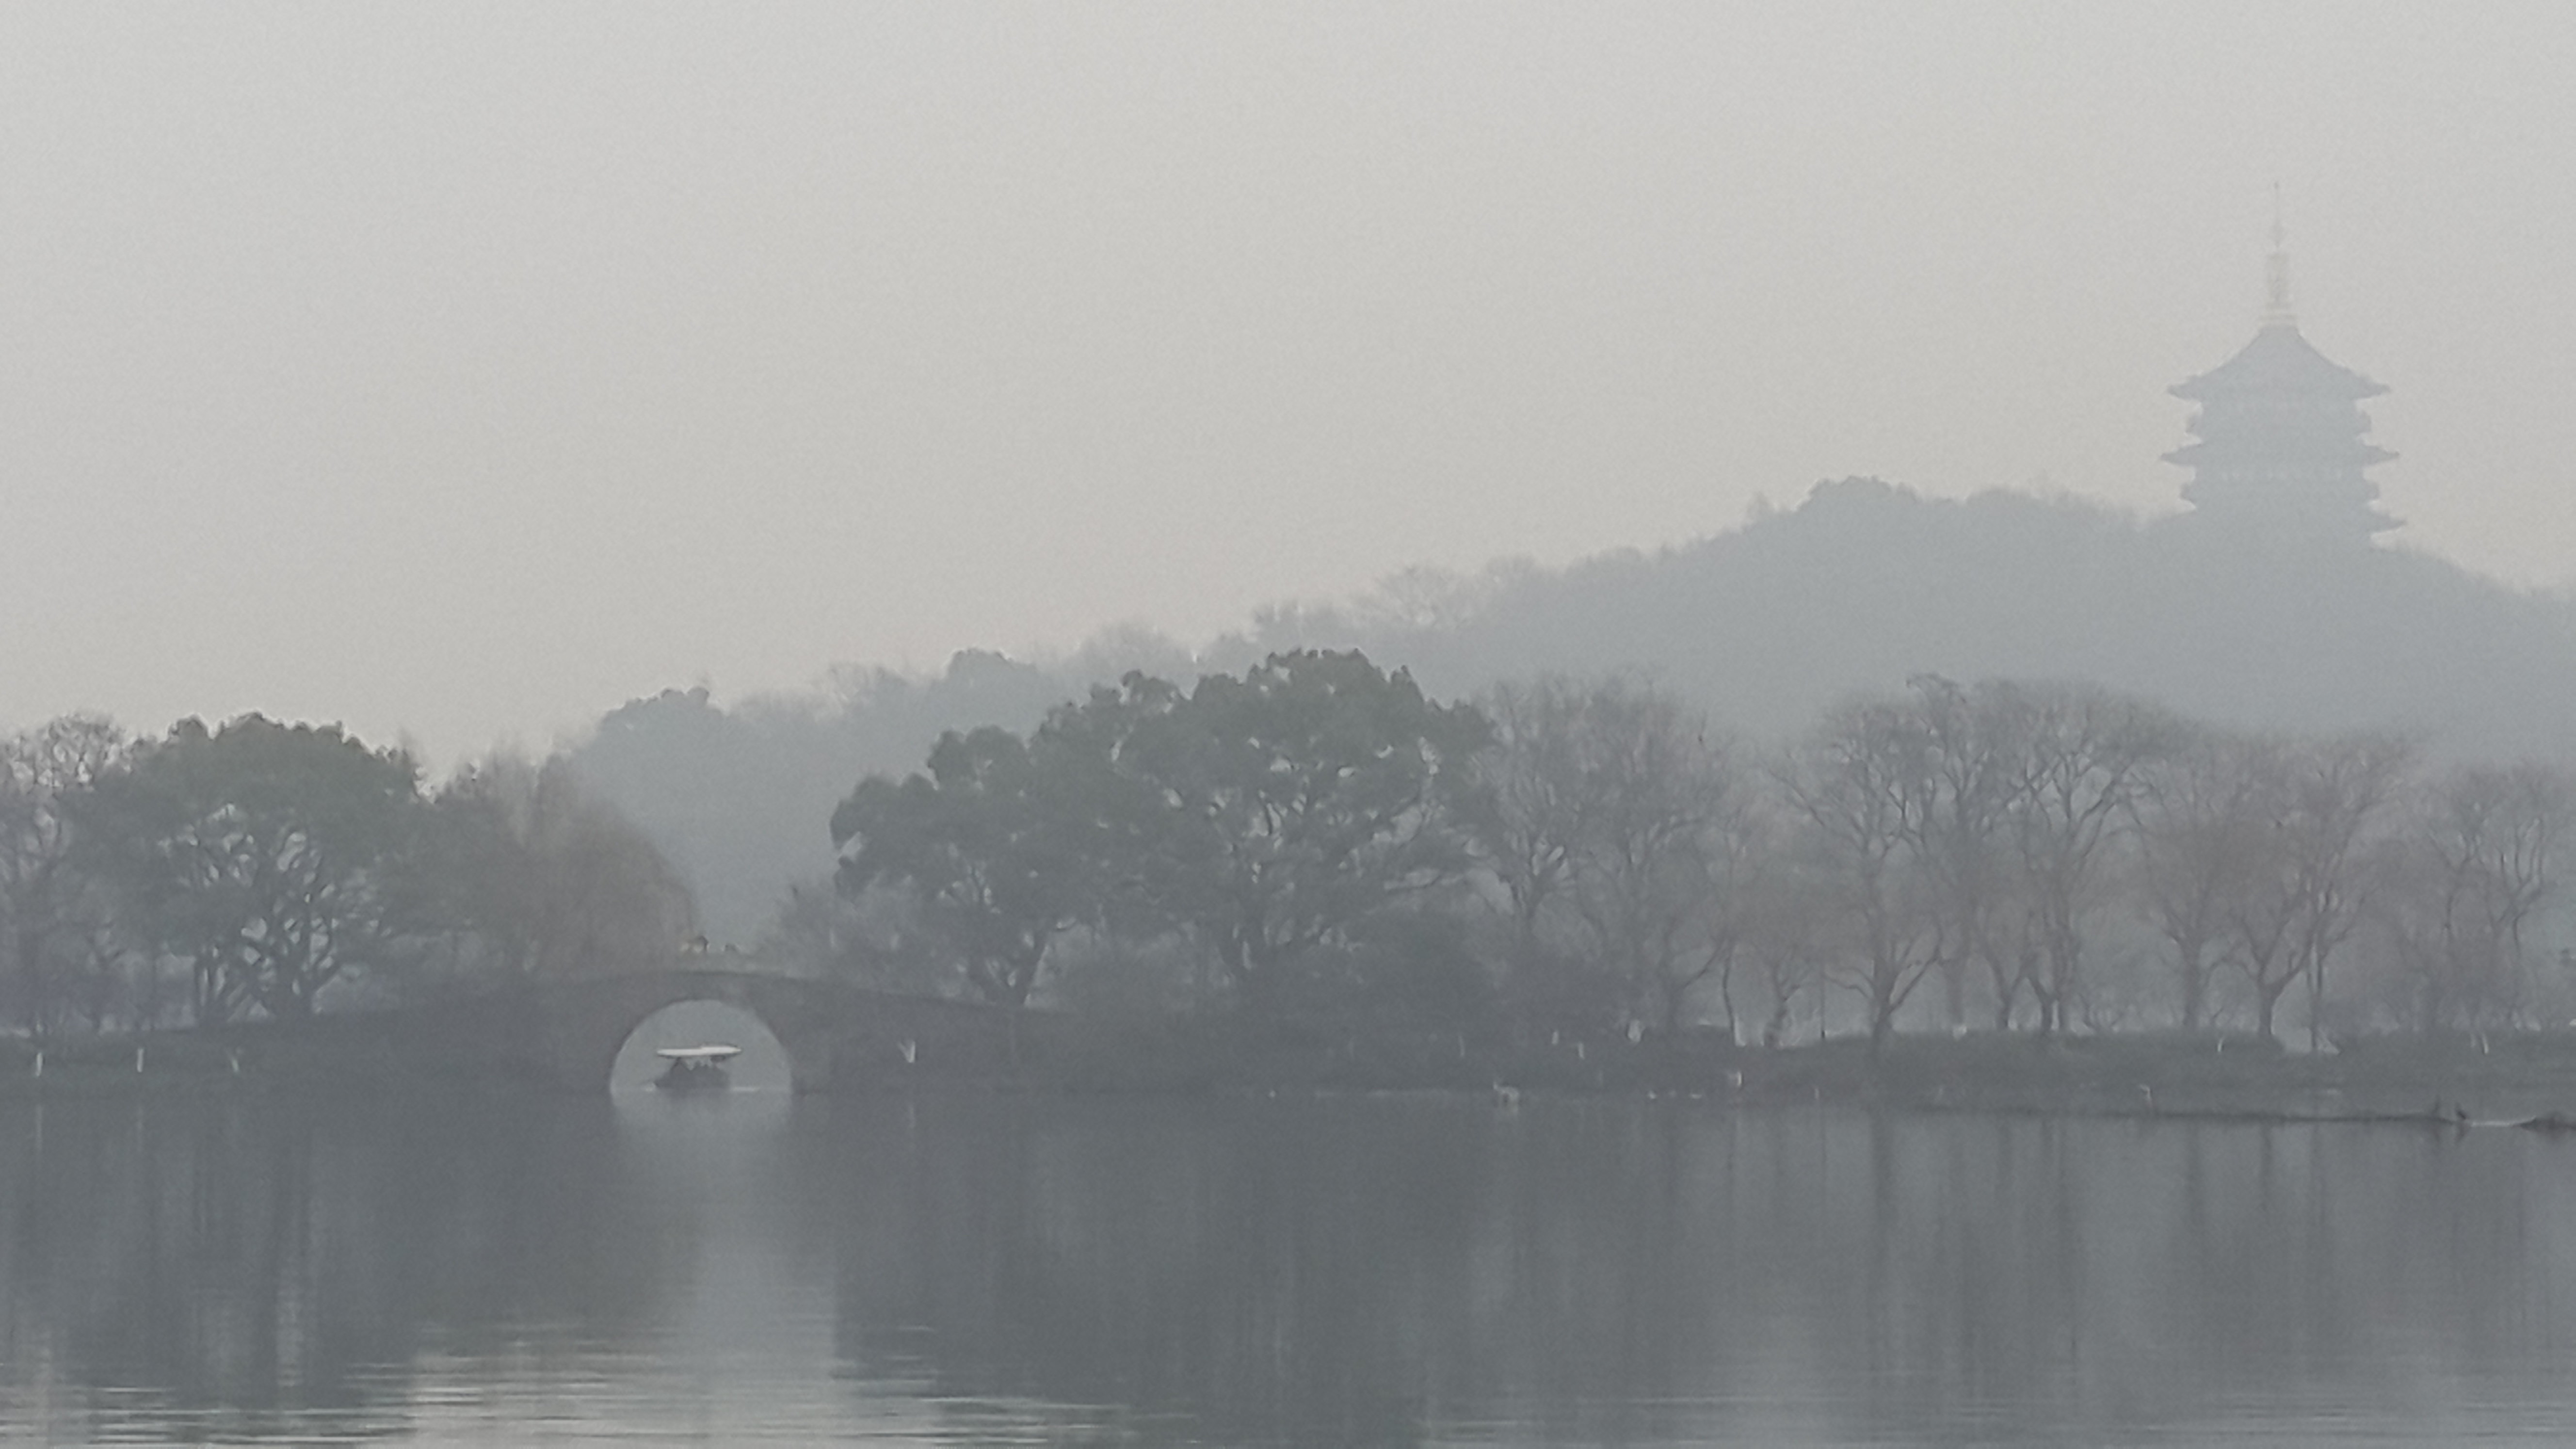 第1天 2015-02-02 正好在阴雨天来到杭州,体味到"山色空蒙雨亦奇"的